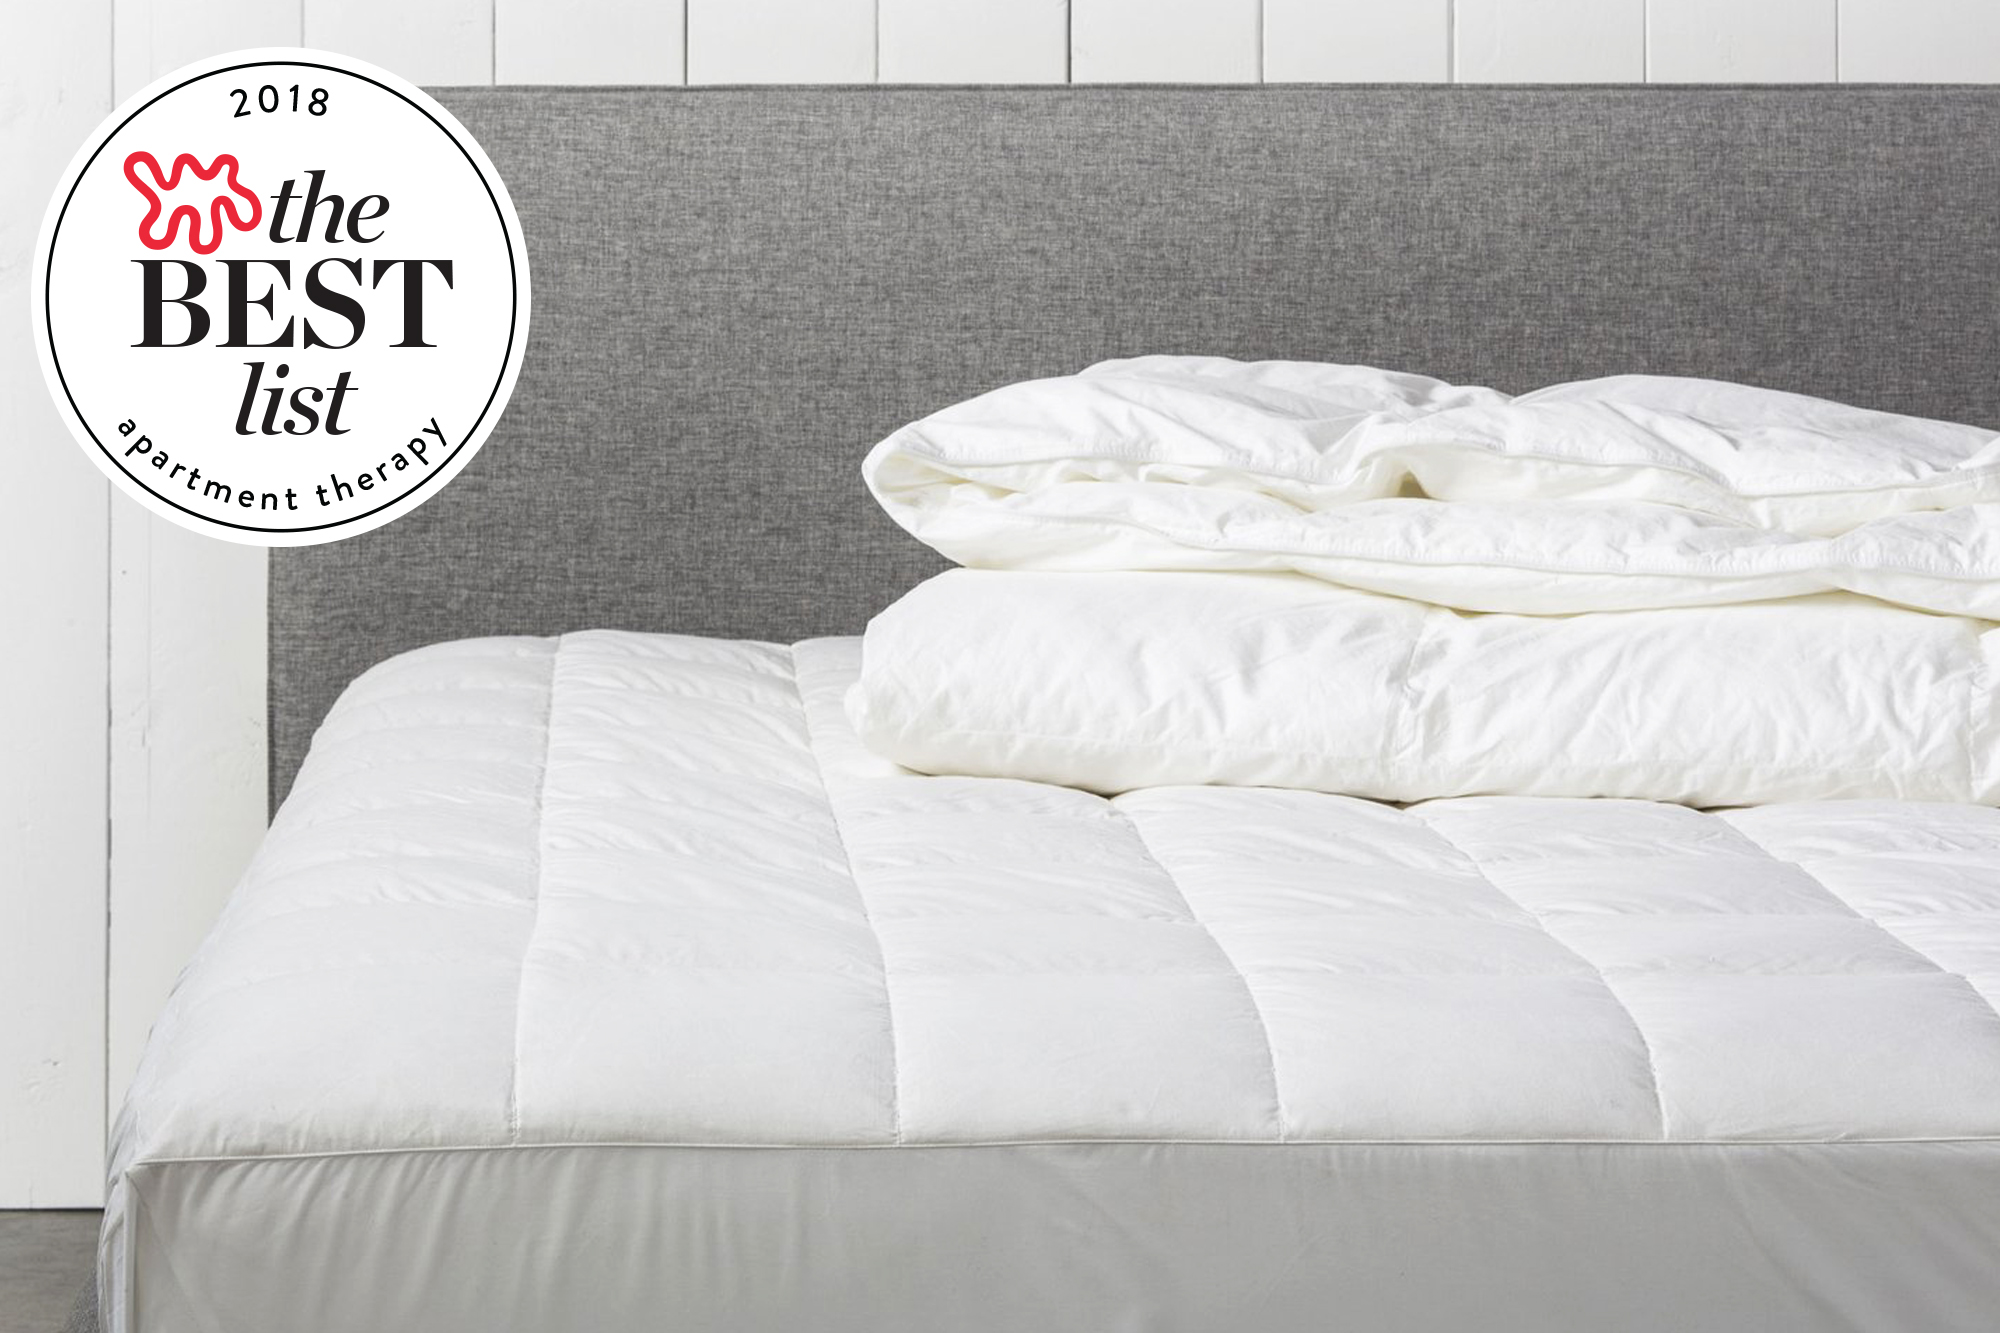 best guest mattress options